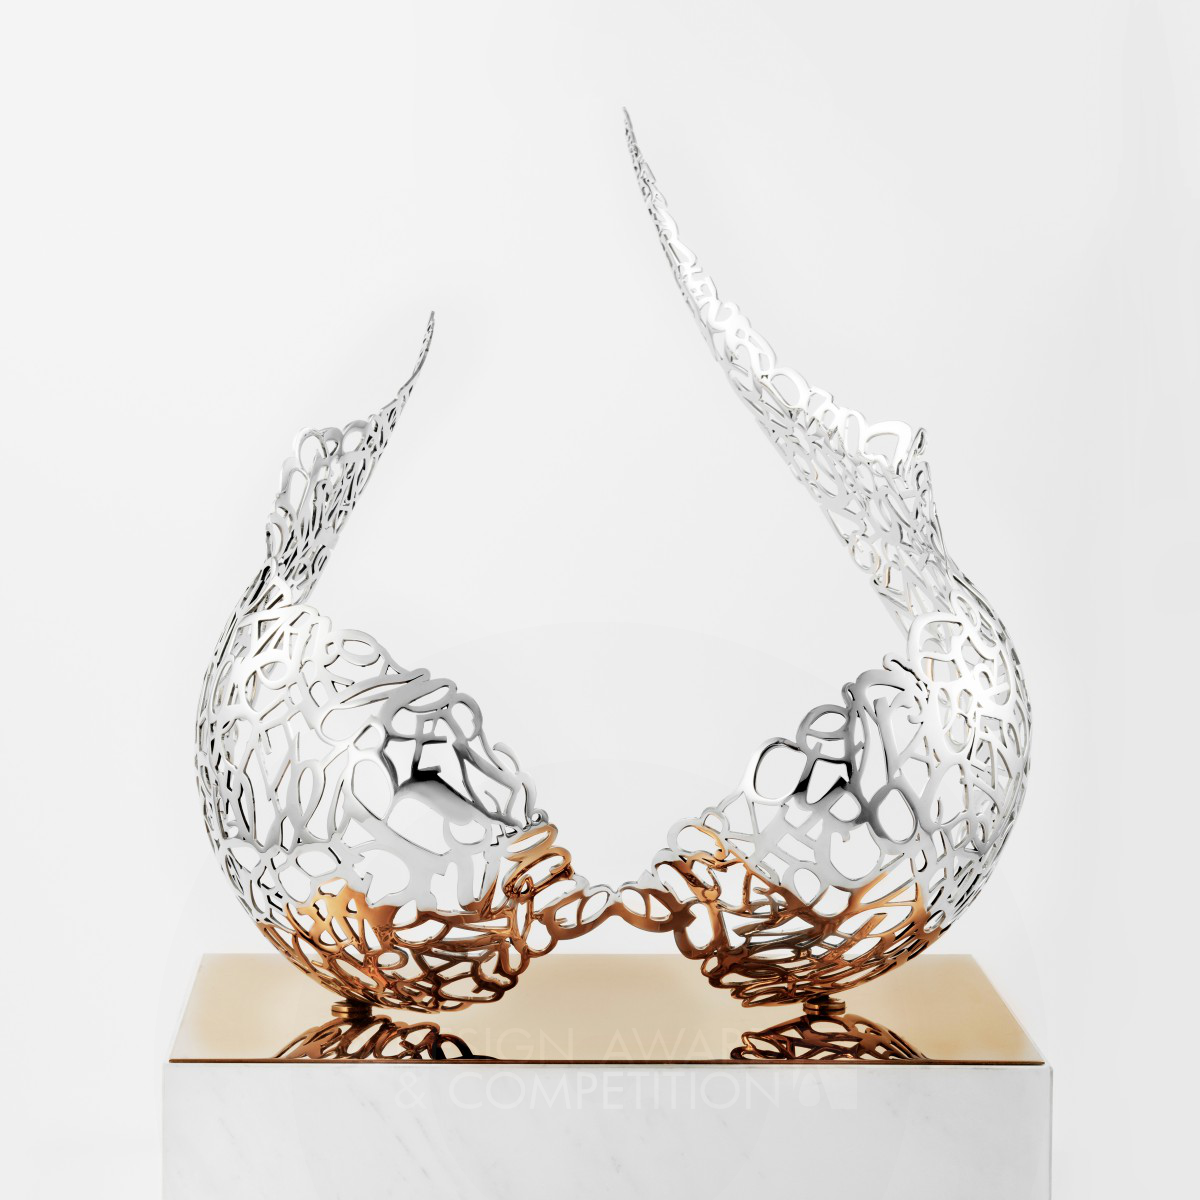 The Wings Sculpture Art by Kirin Leung